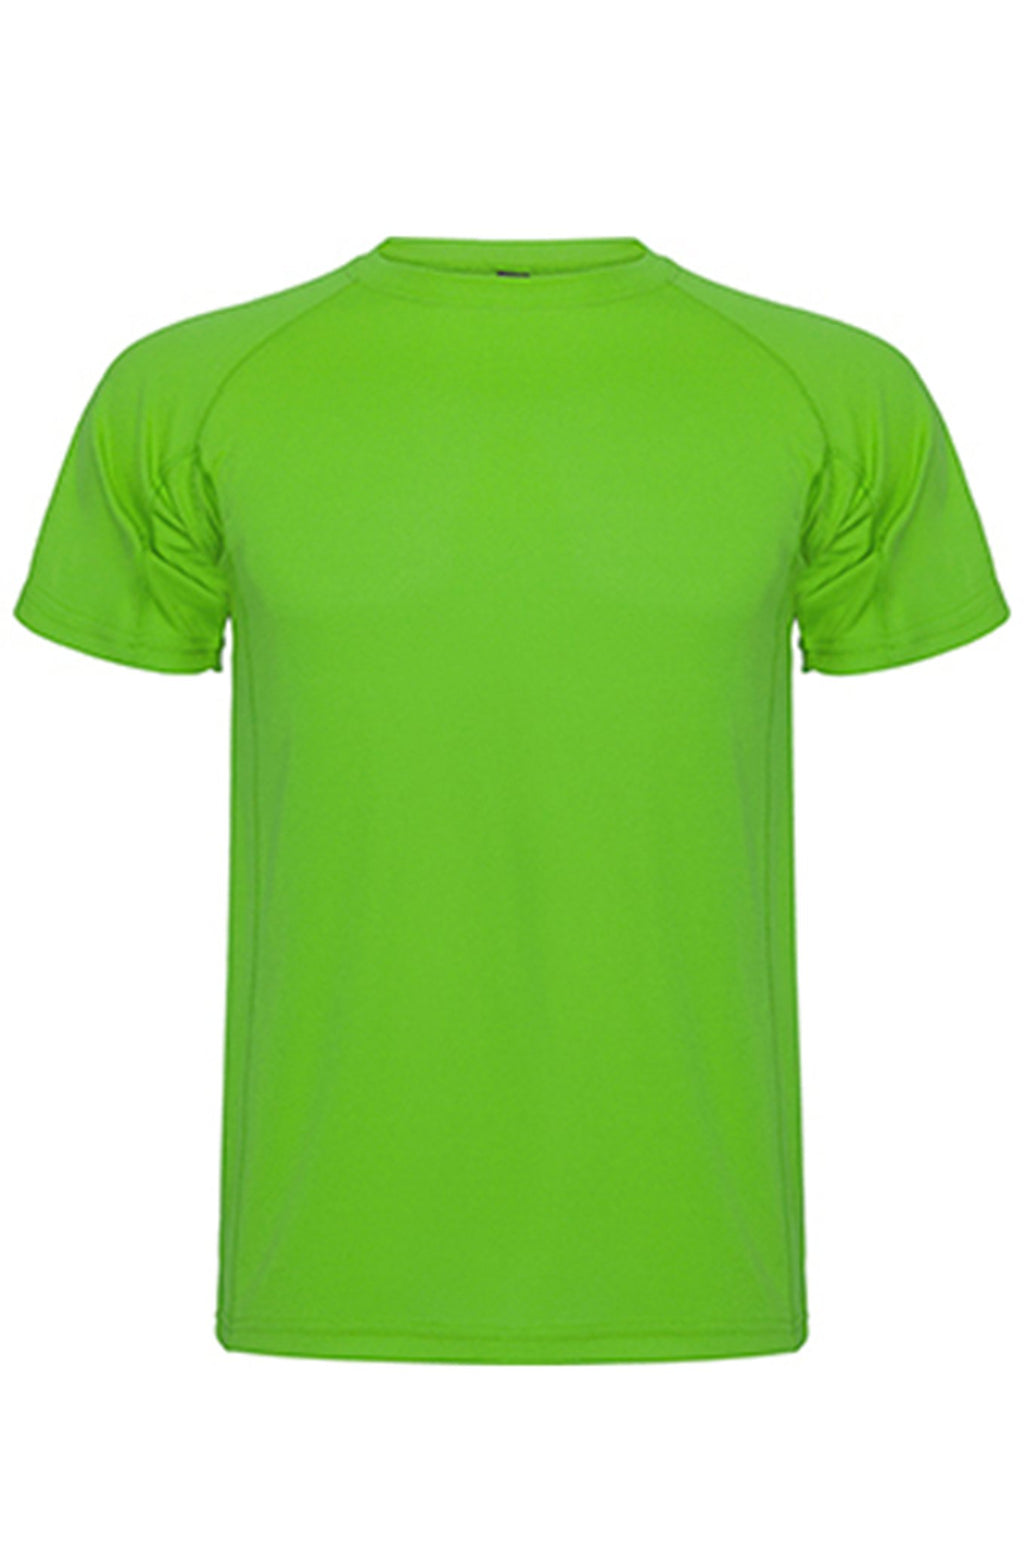 Treniruotės marškinėliai - žalia